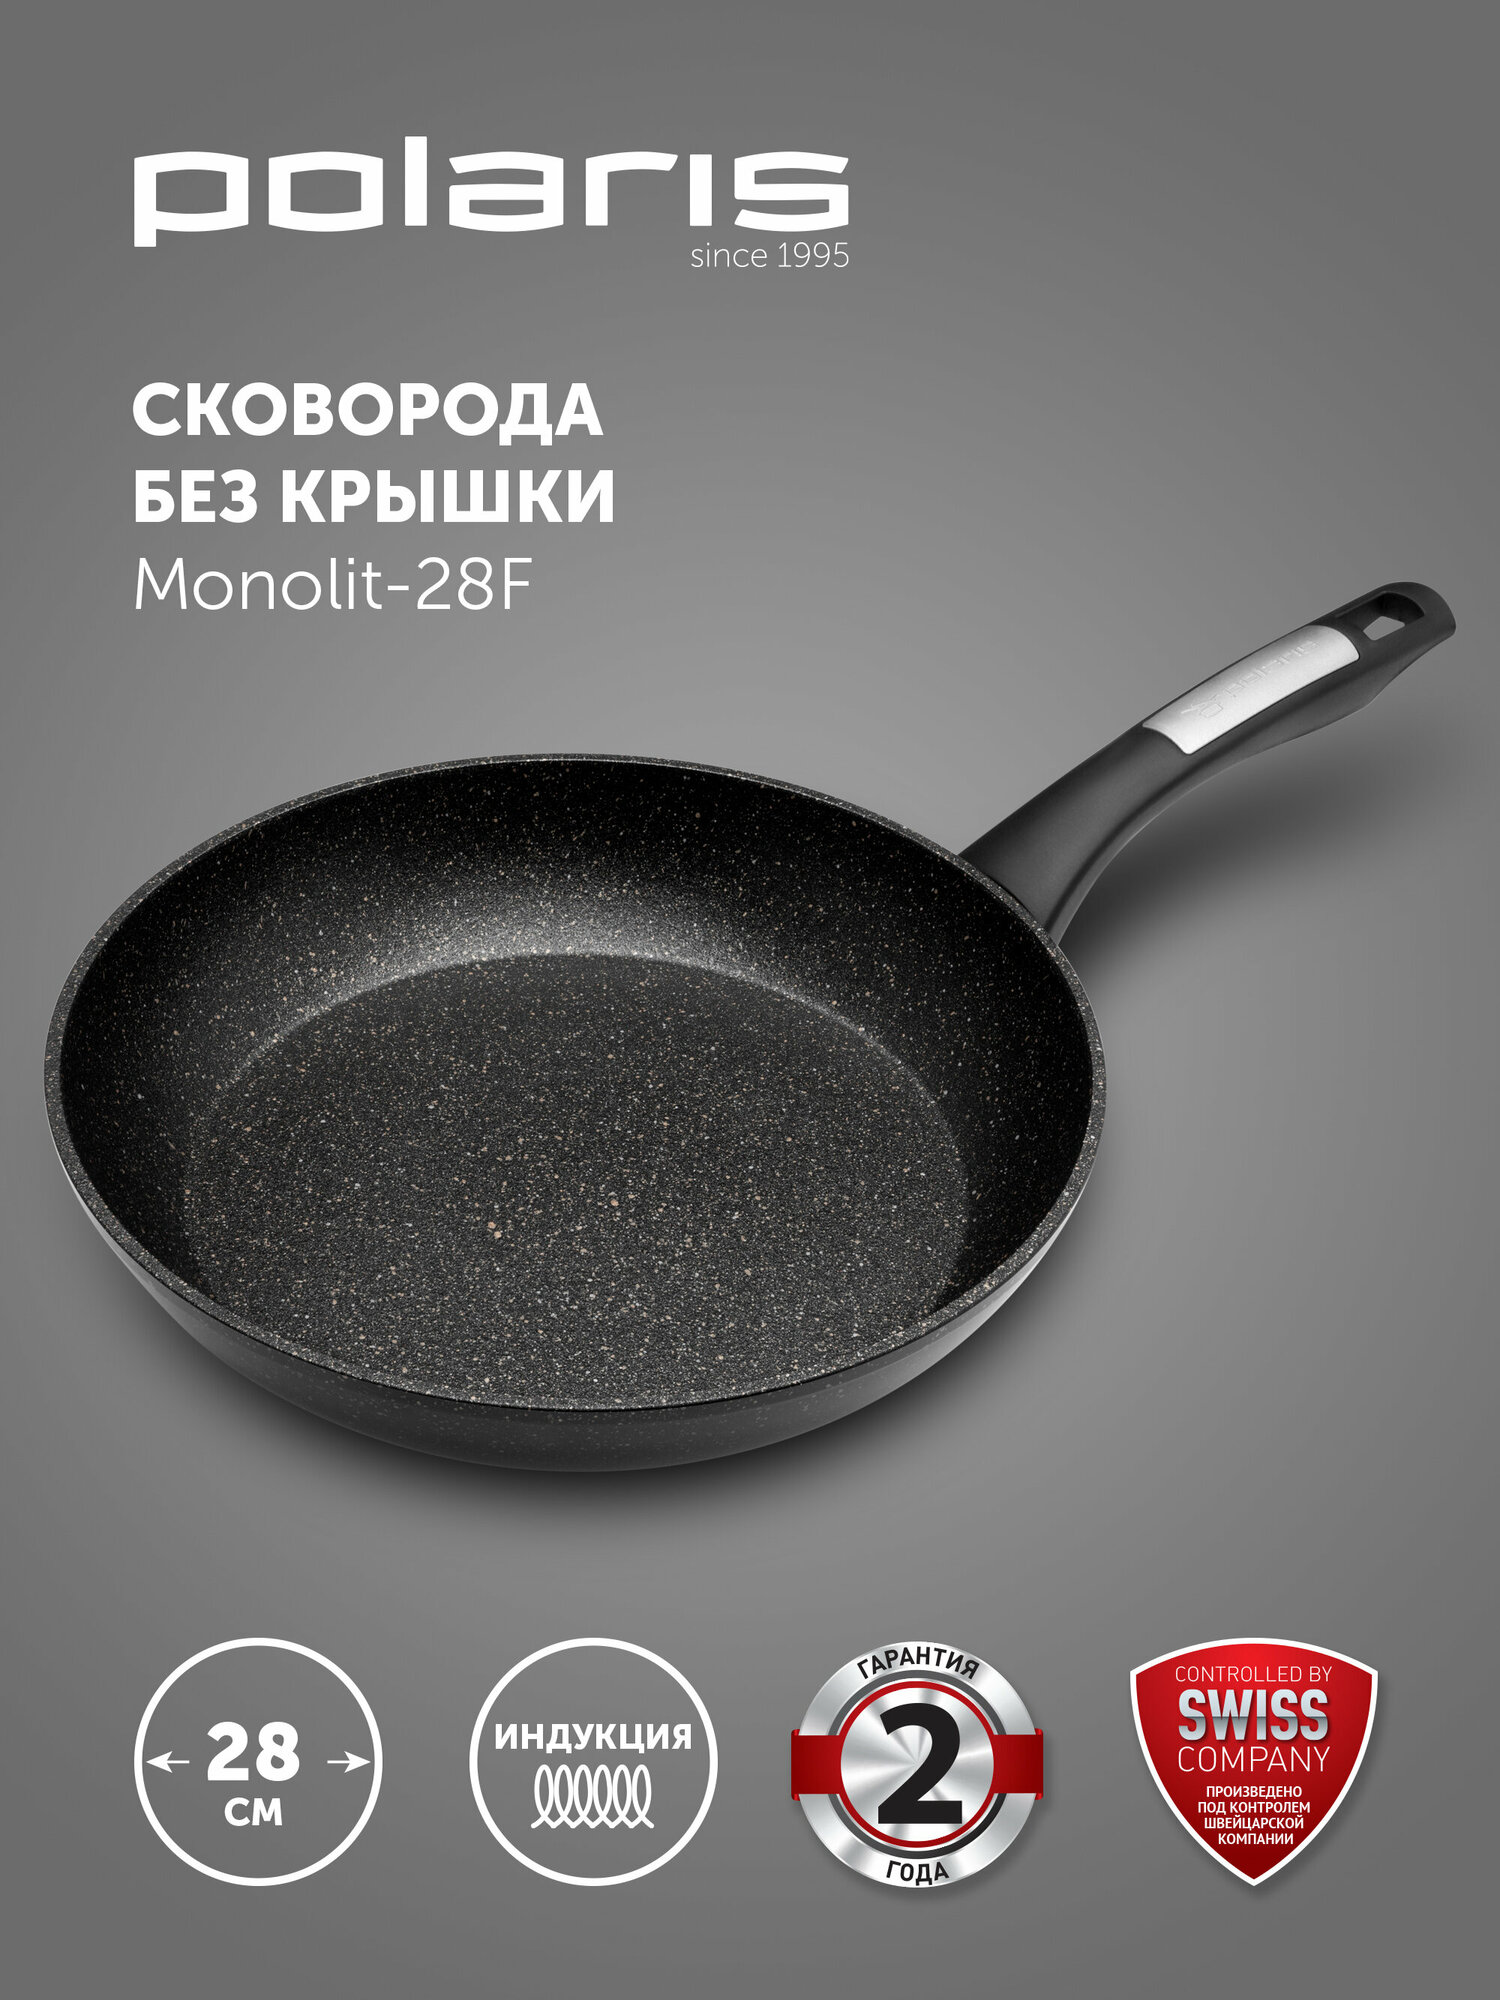 Сковорода Monolit-28F ков.ал., 28 см (POLARIS)